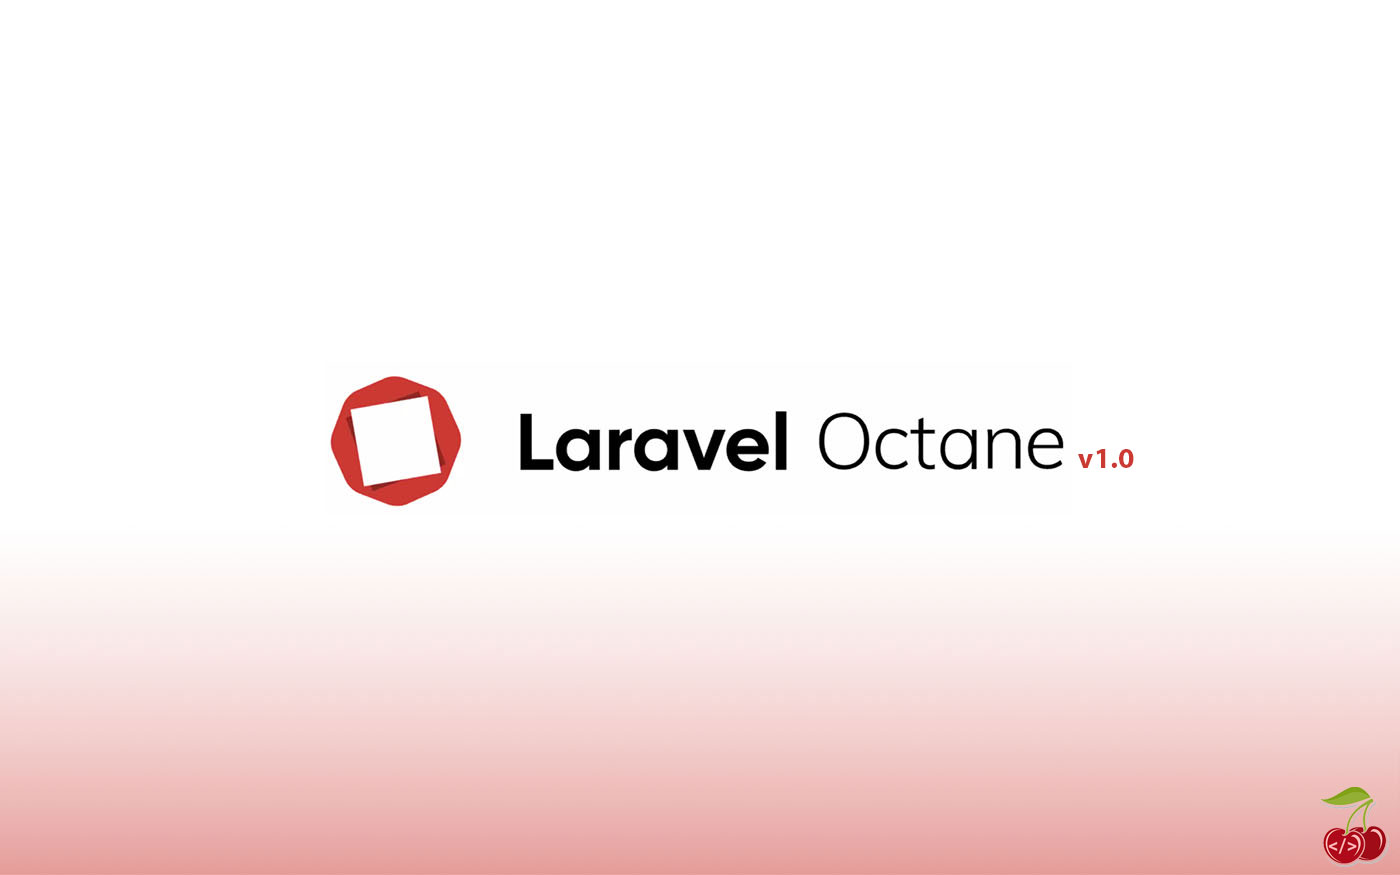 انتشار نسخه ۱ لاراول اکتان - Laravel Octane v1.0